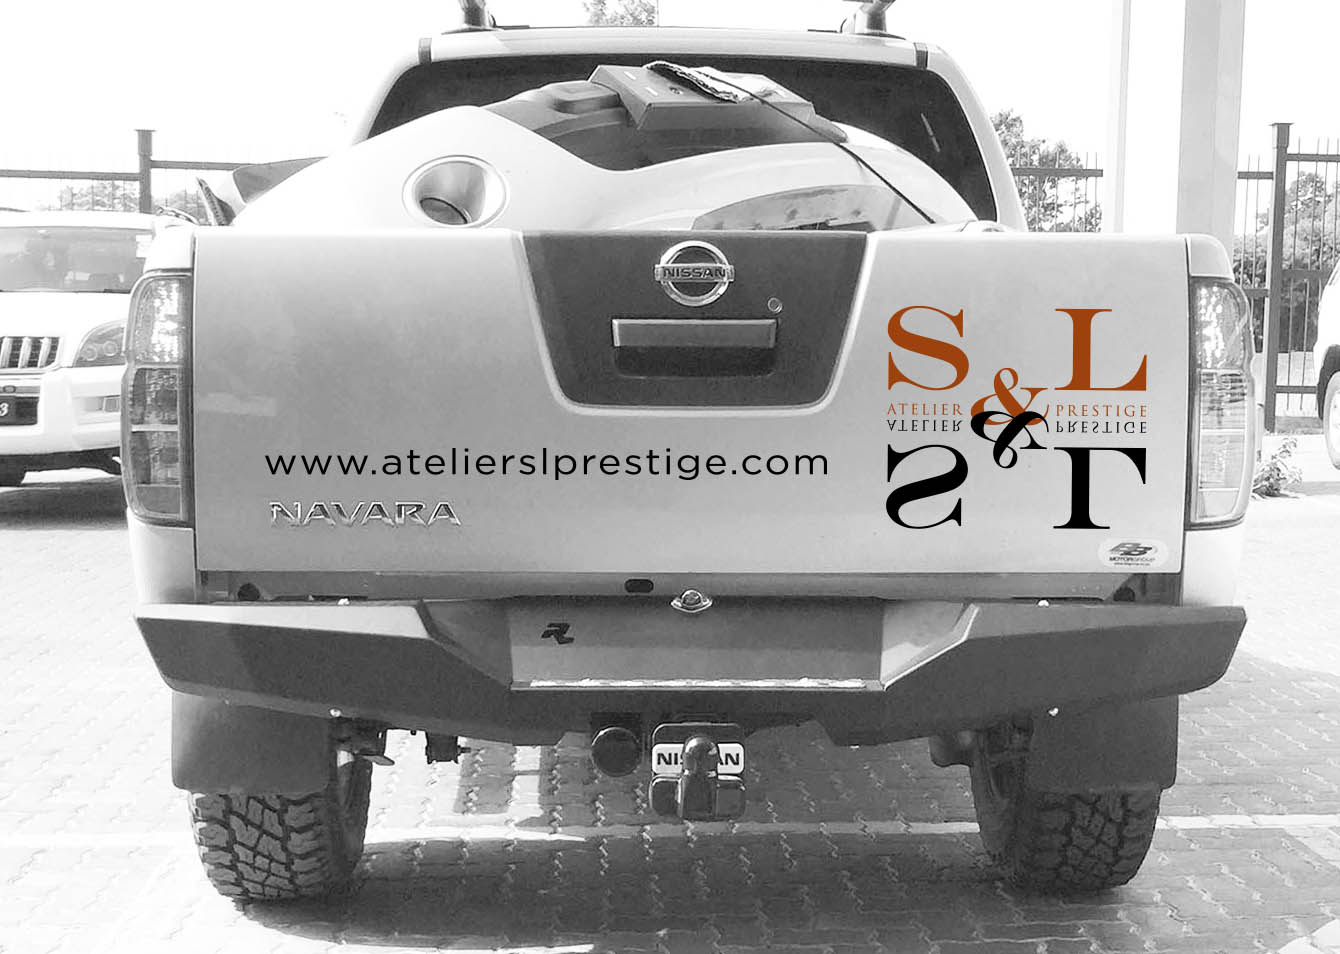 Atelier S&L Prestige - Réalisation des outils de papeterie et habillage véhicules